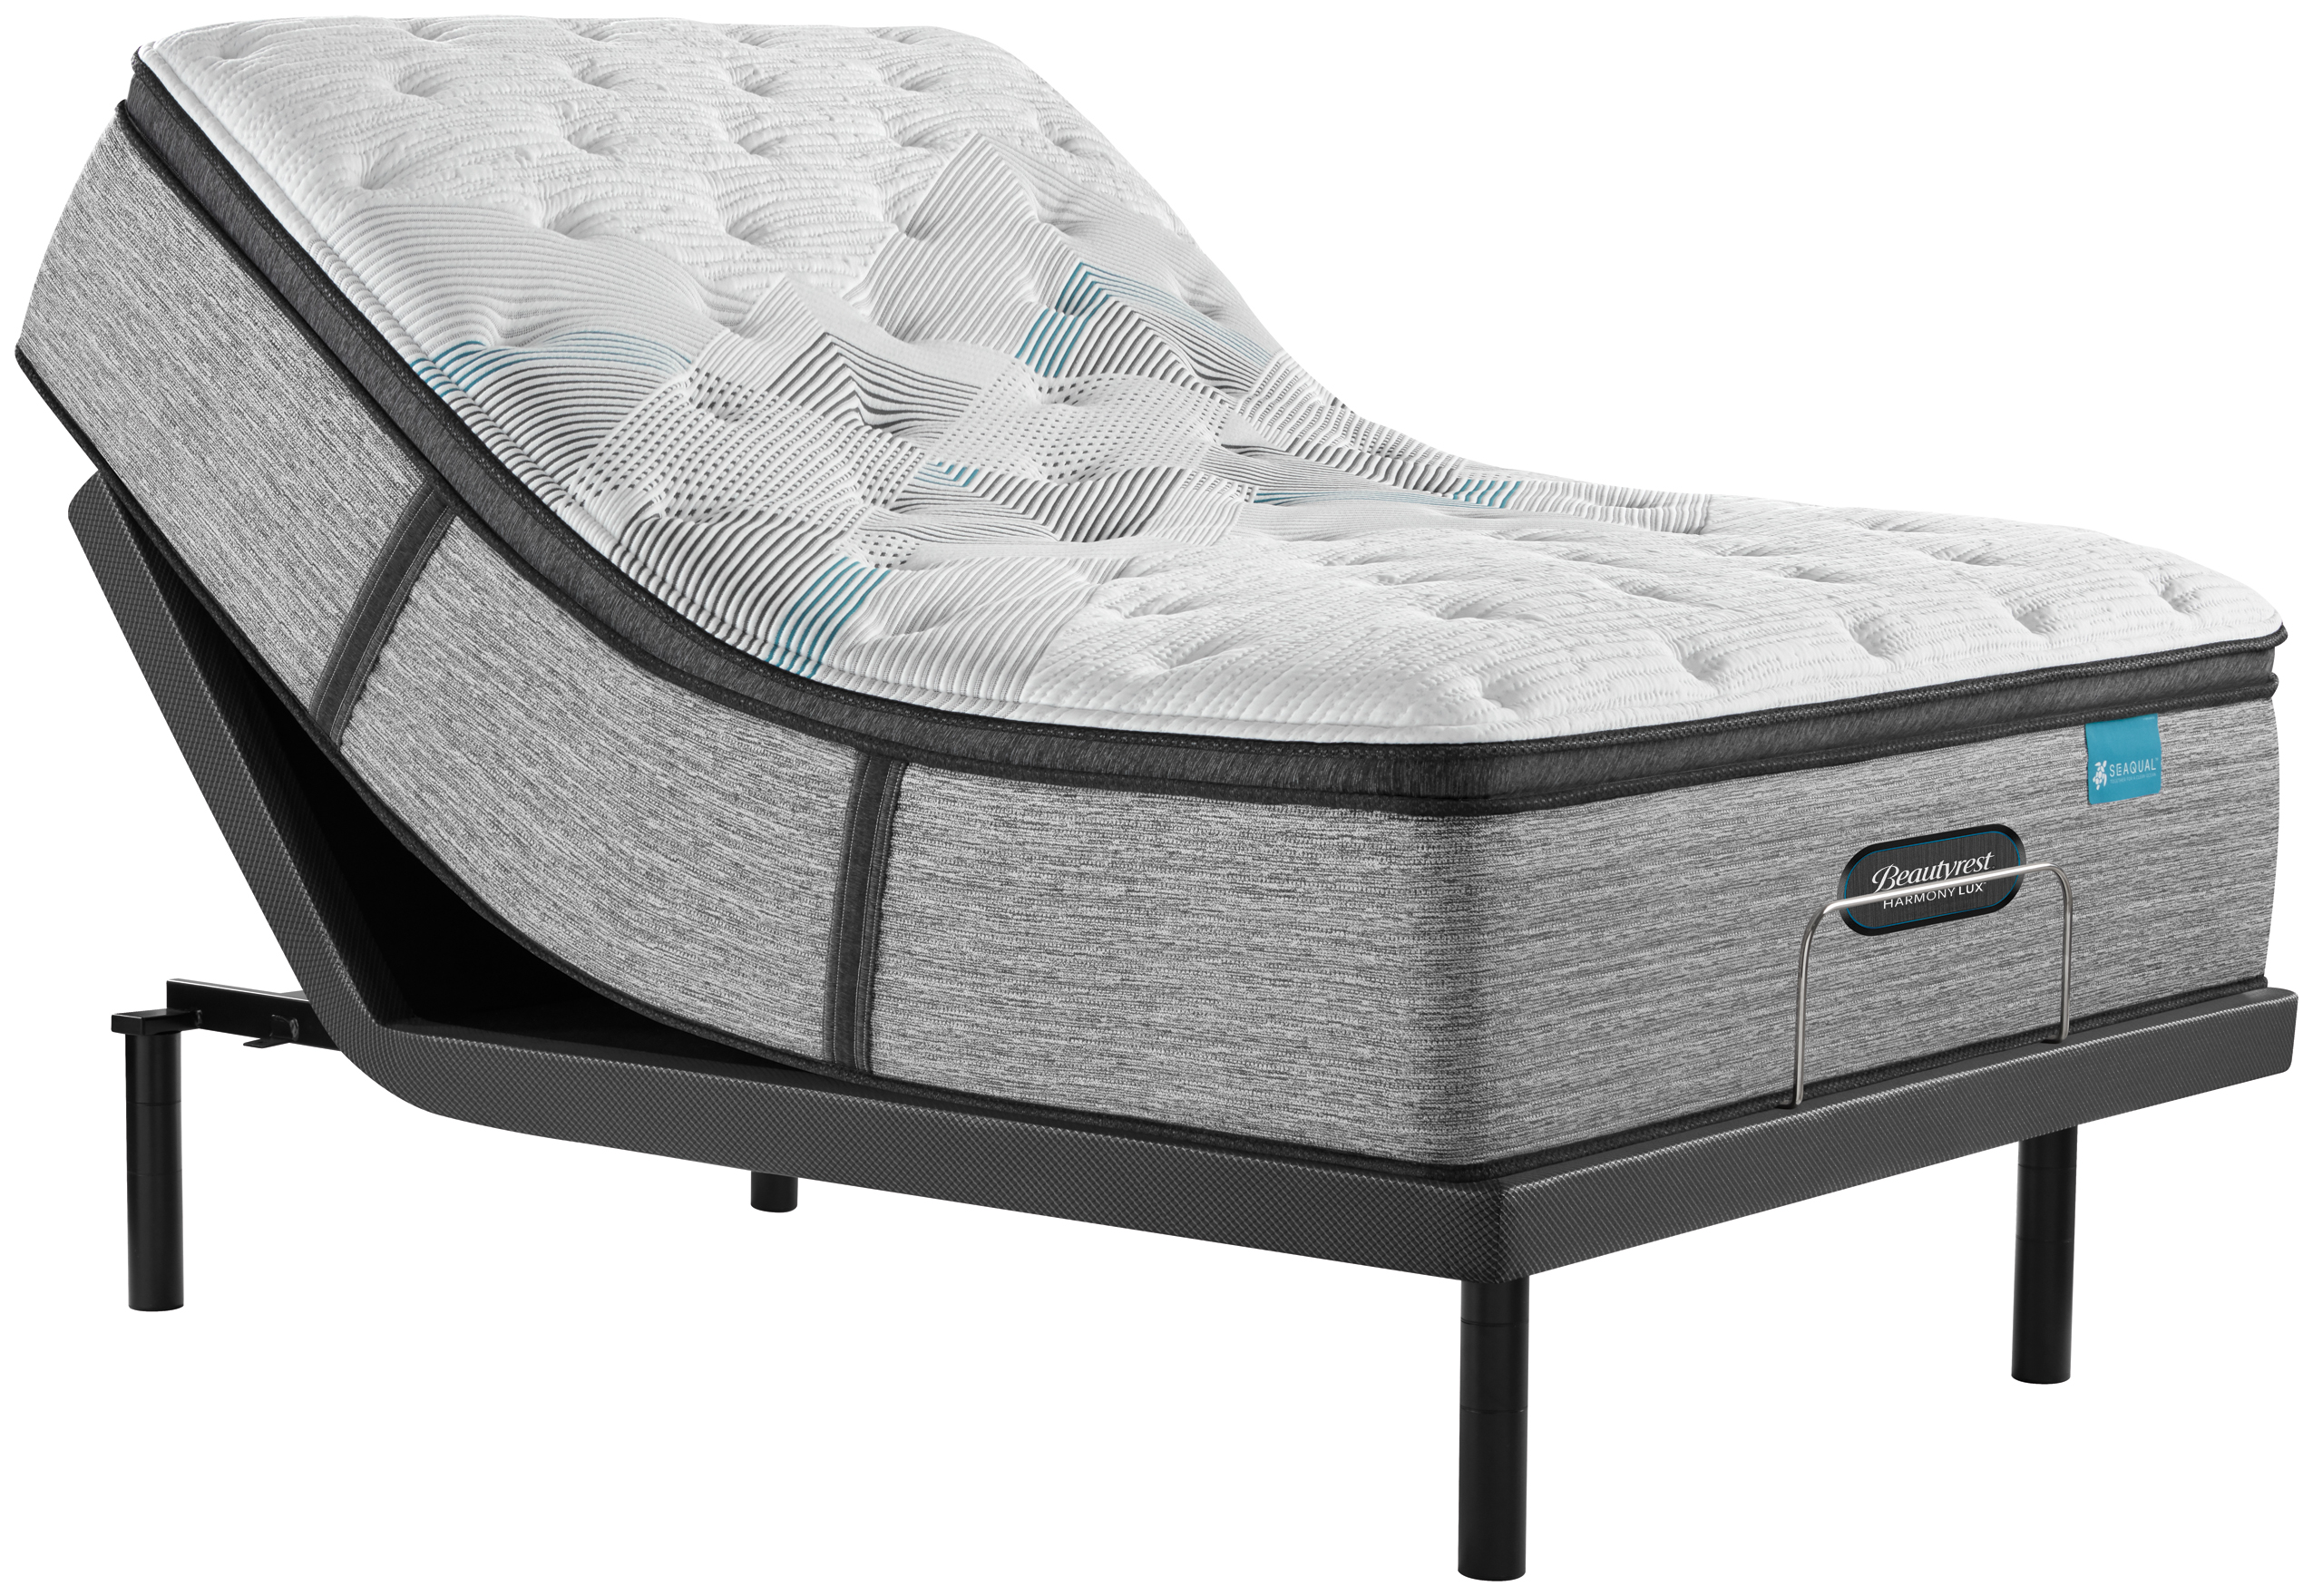 beautyrest carbon plush mattress